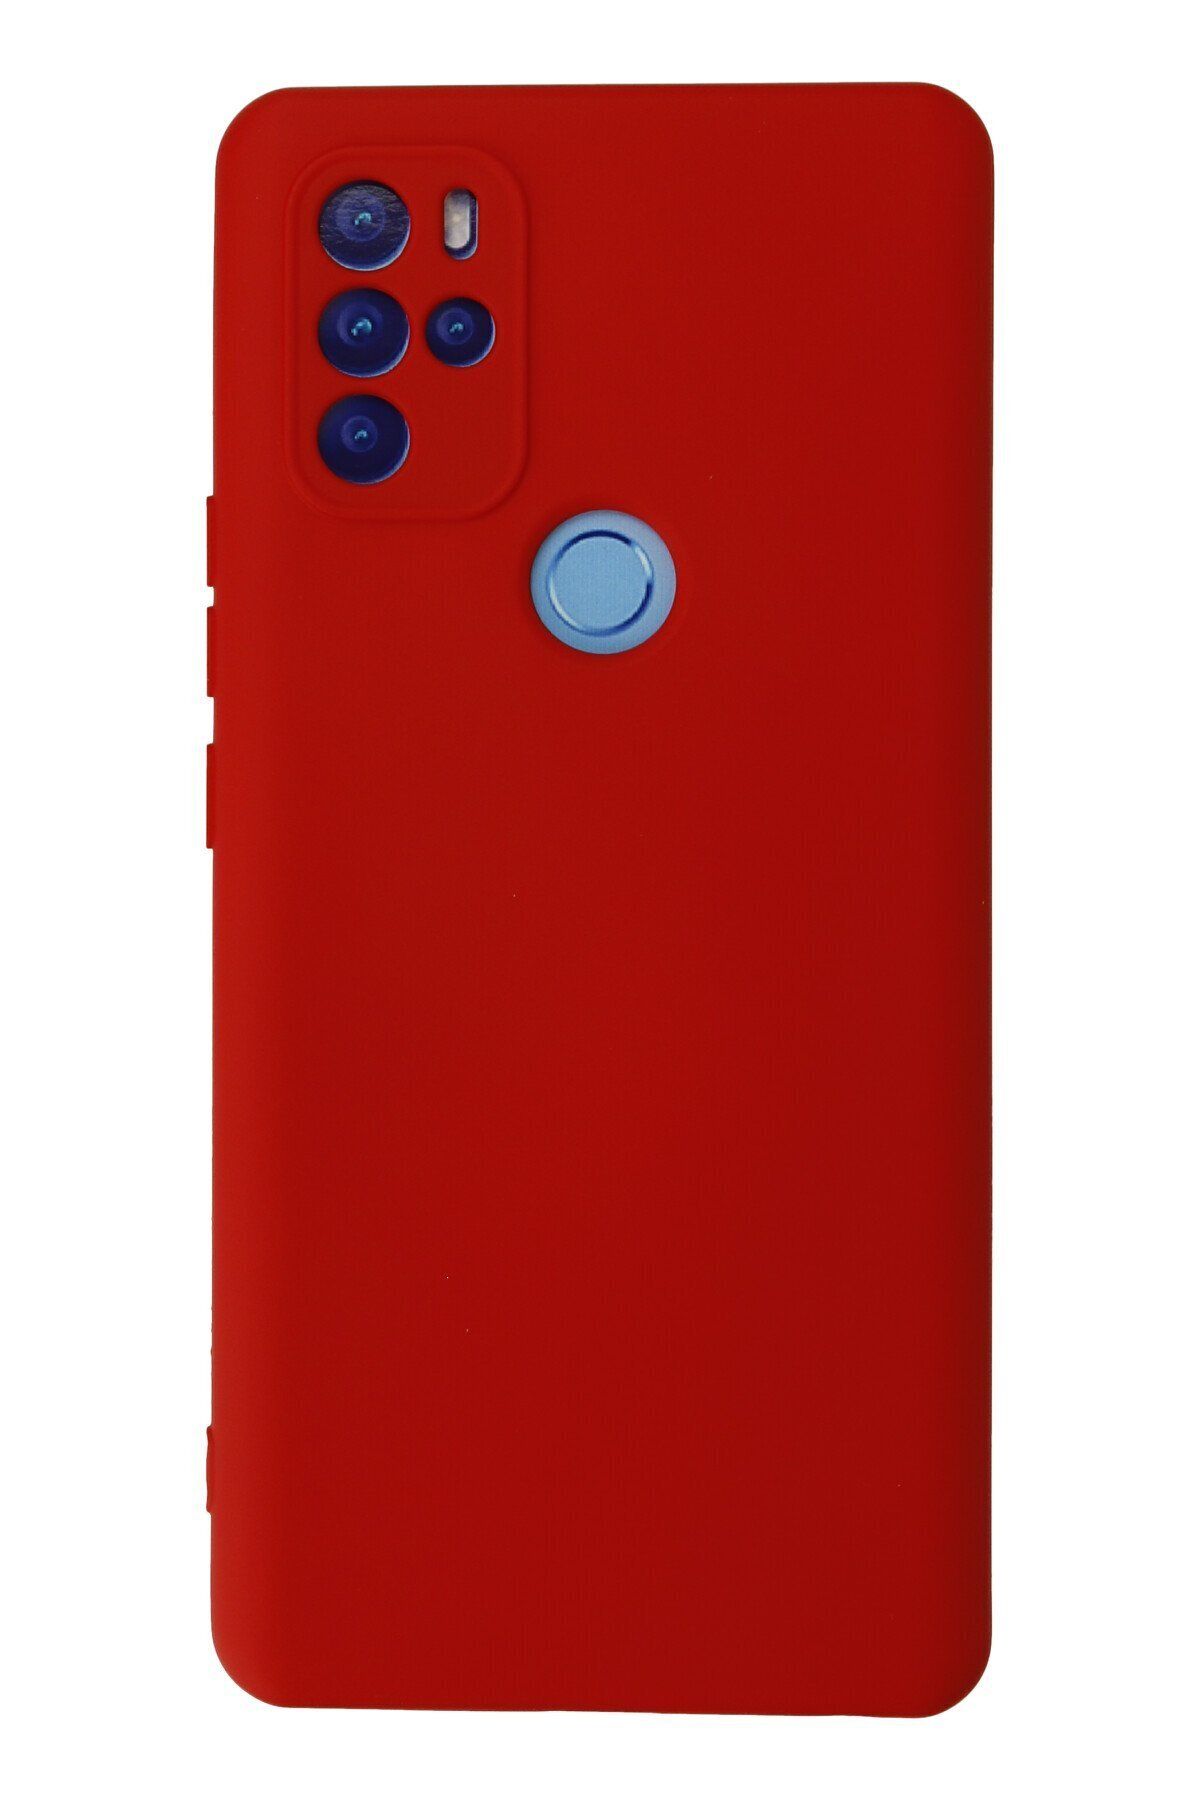 NewFace Omix X300 içi Süet Telefon Kılıfı - Soft Yüzey Kadife Silikon Kapak - Kırmızı